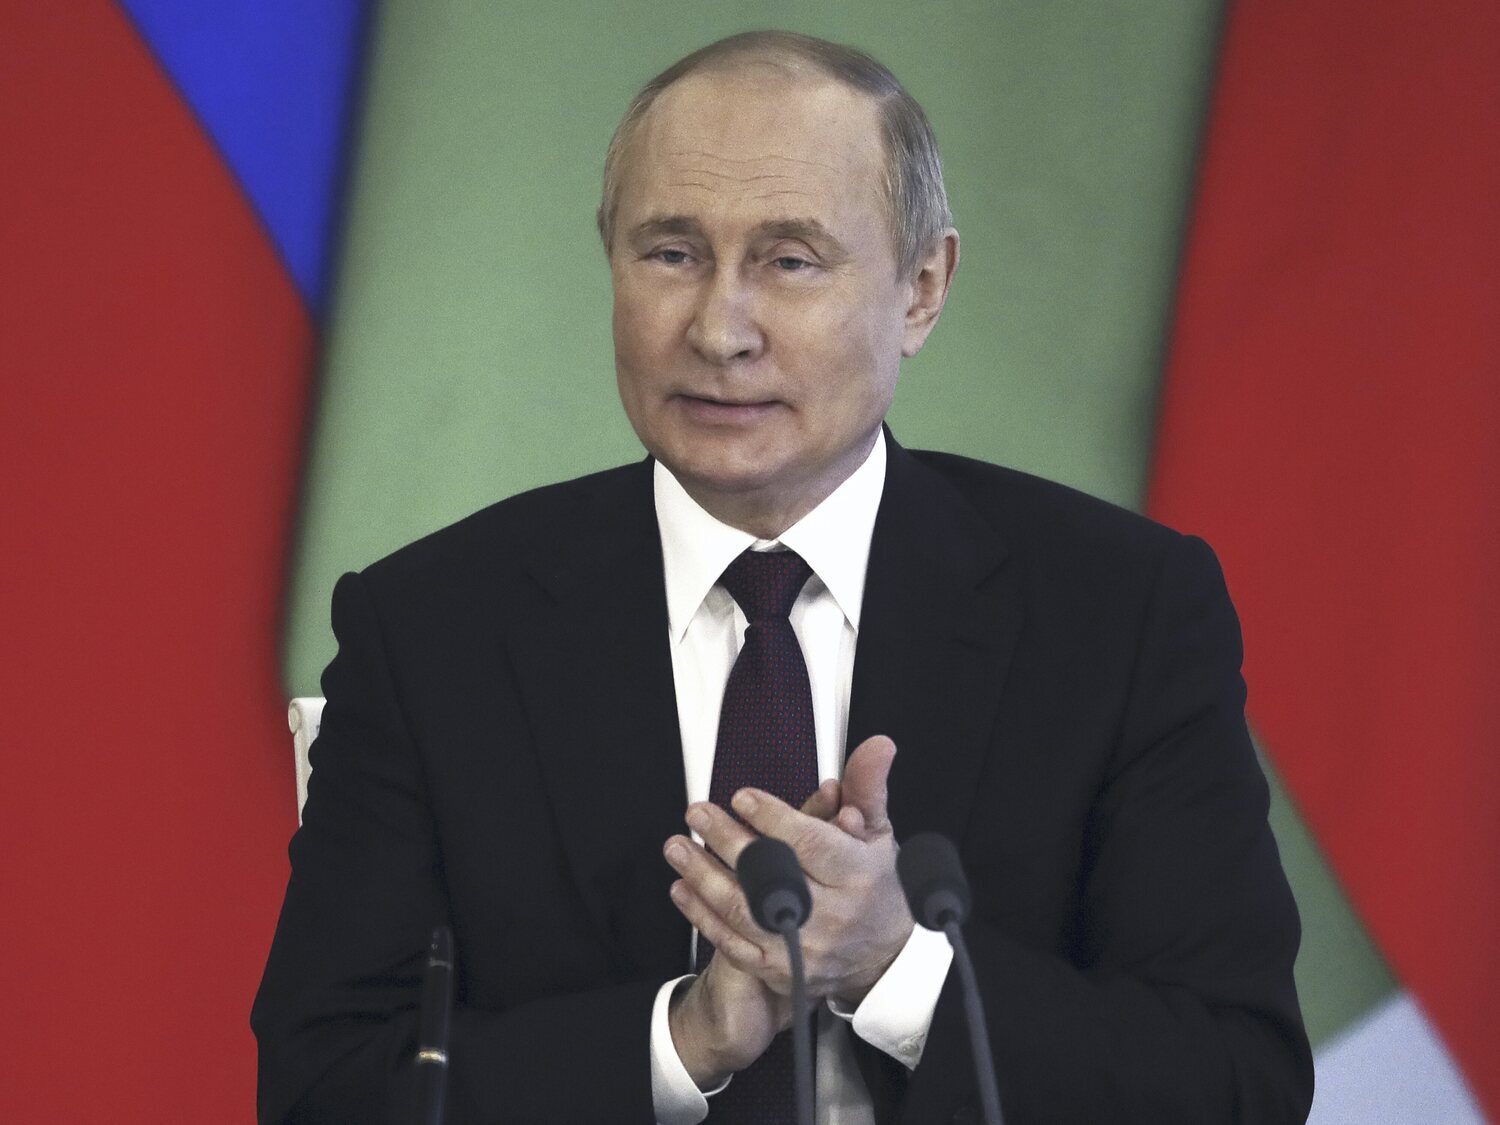 El director de la CIA desmiente que Putin sufra enfermedad grave: "Está demasiado sano"